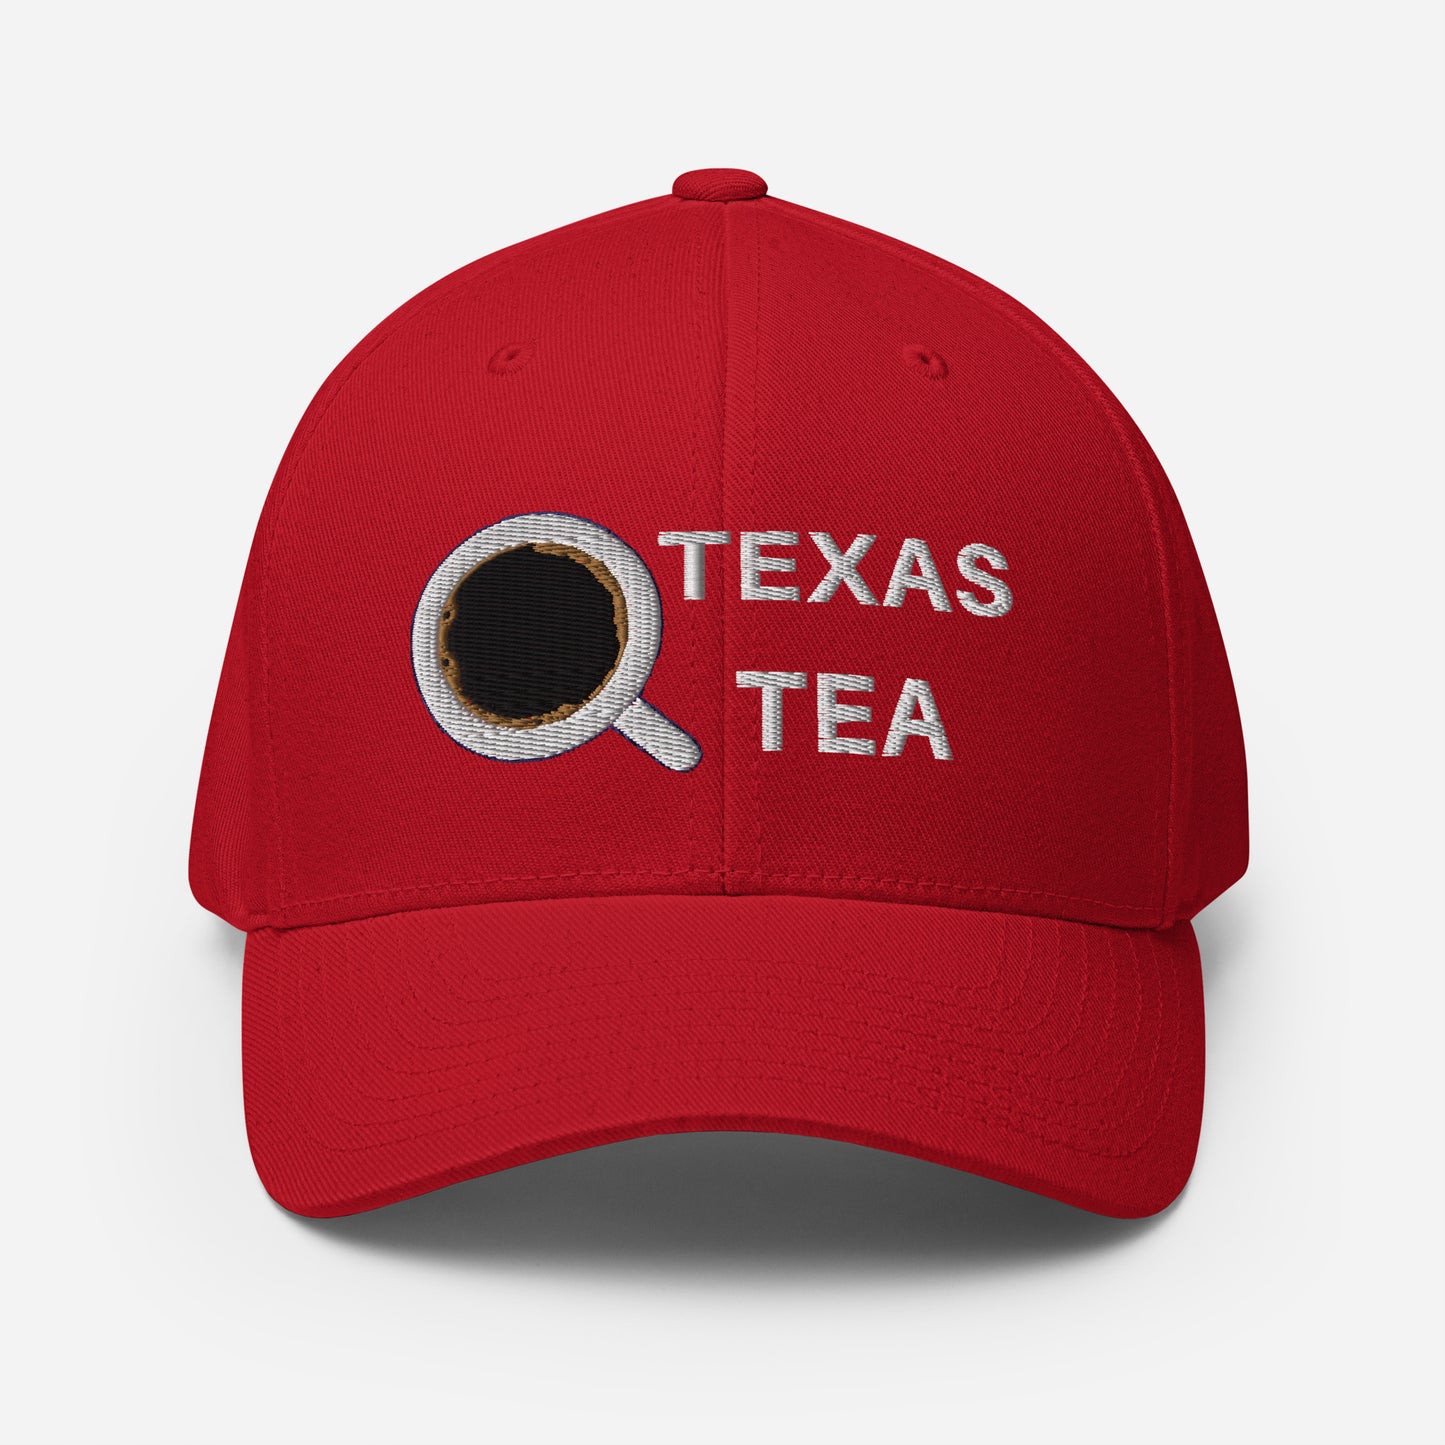 TEXAS TEA Structured Twill Cap